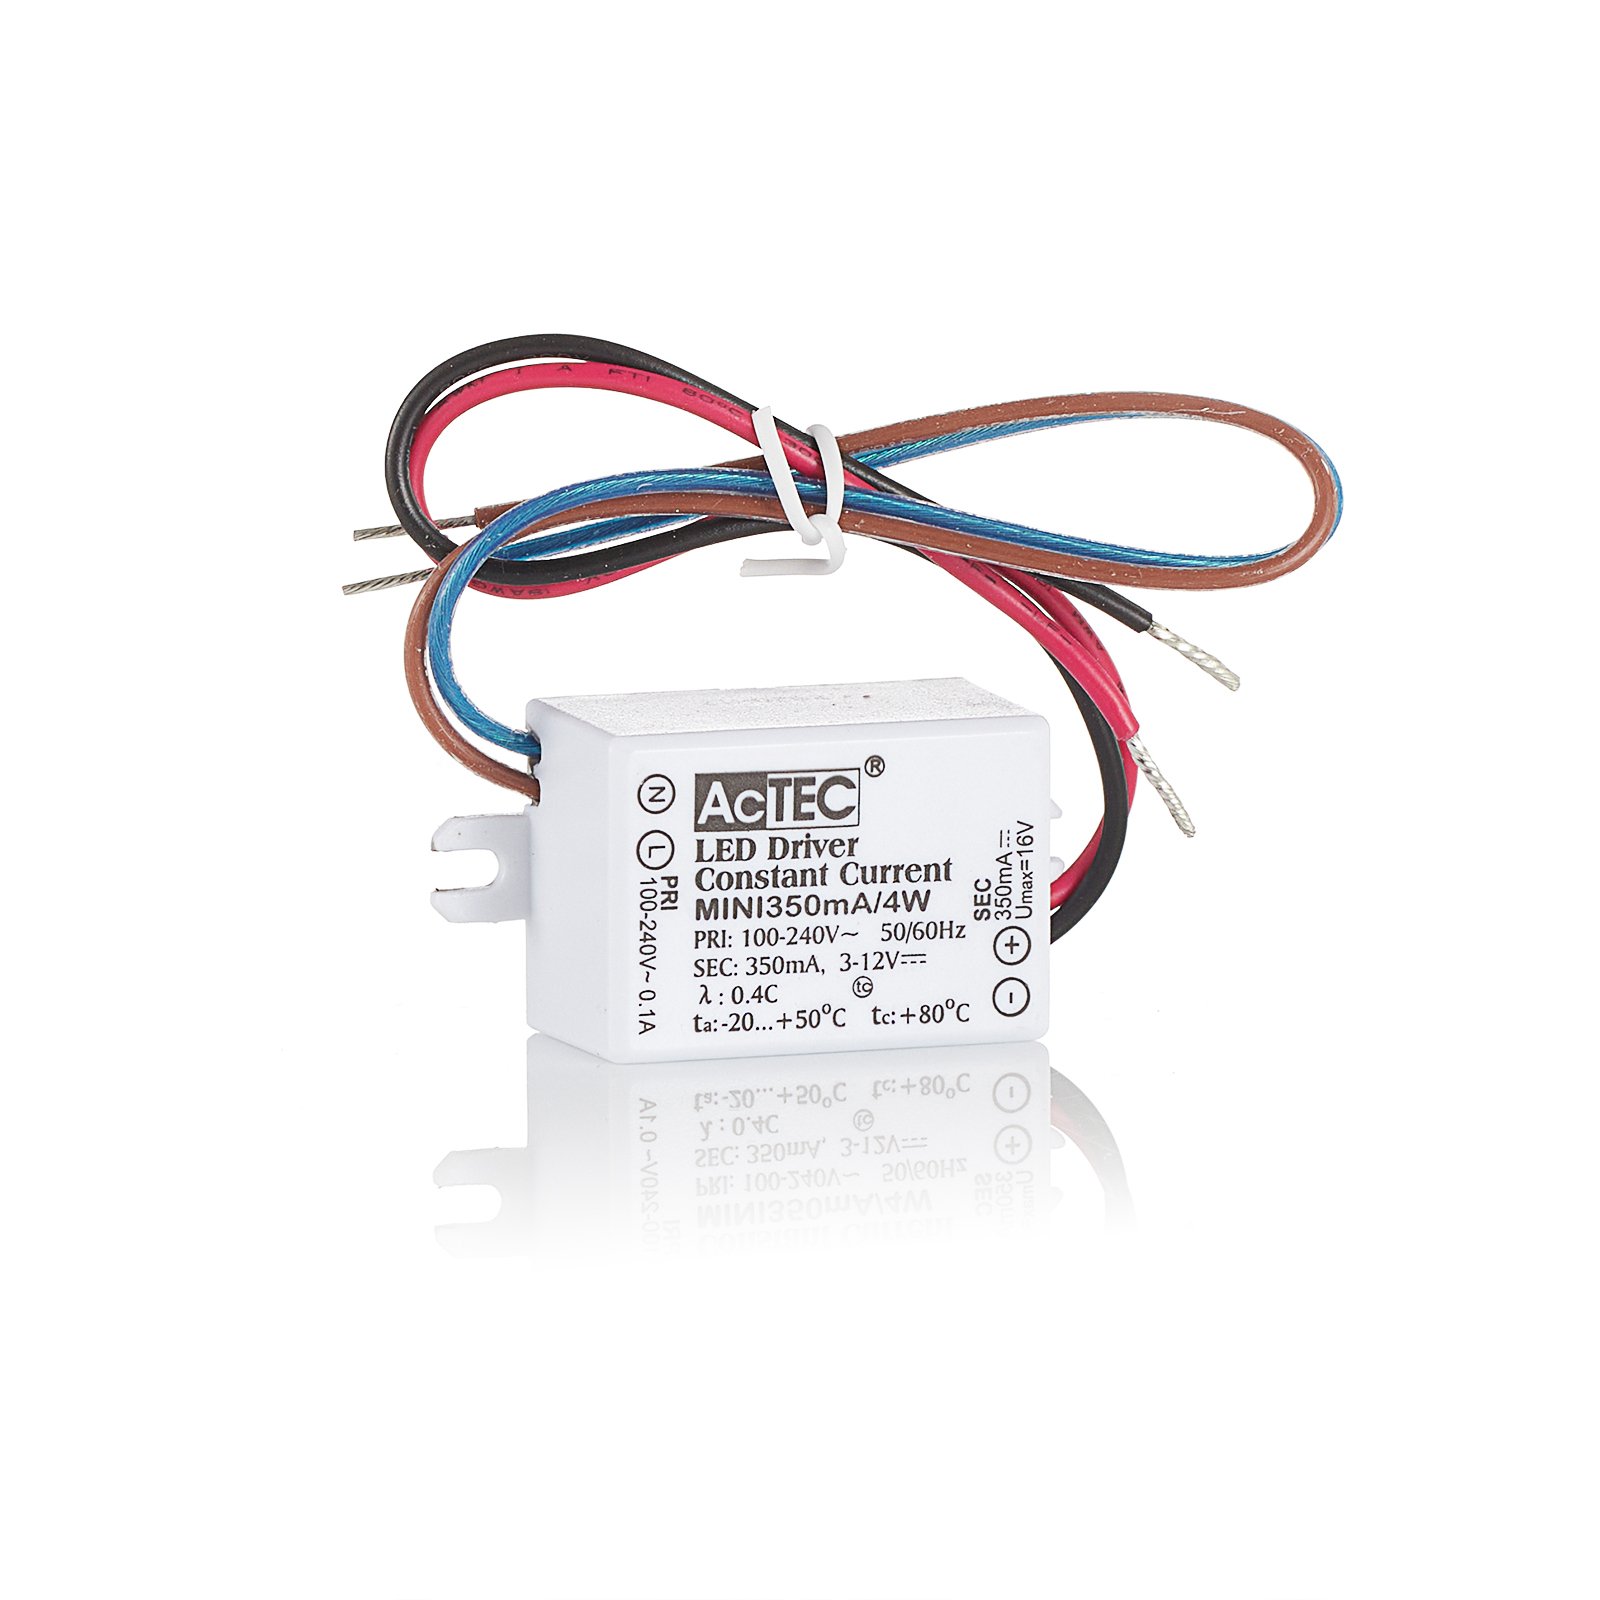 AcTEC Mini transformador LED CC 700mA, 4W, IP65